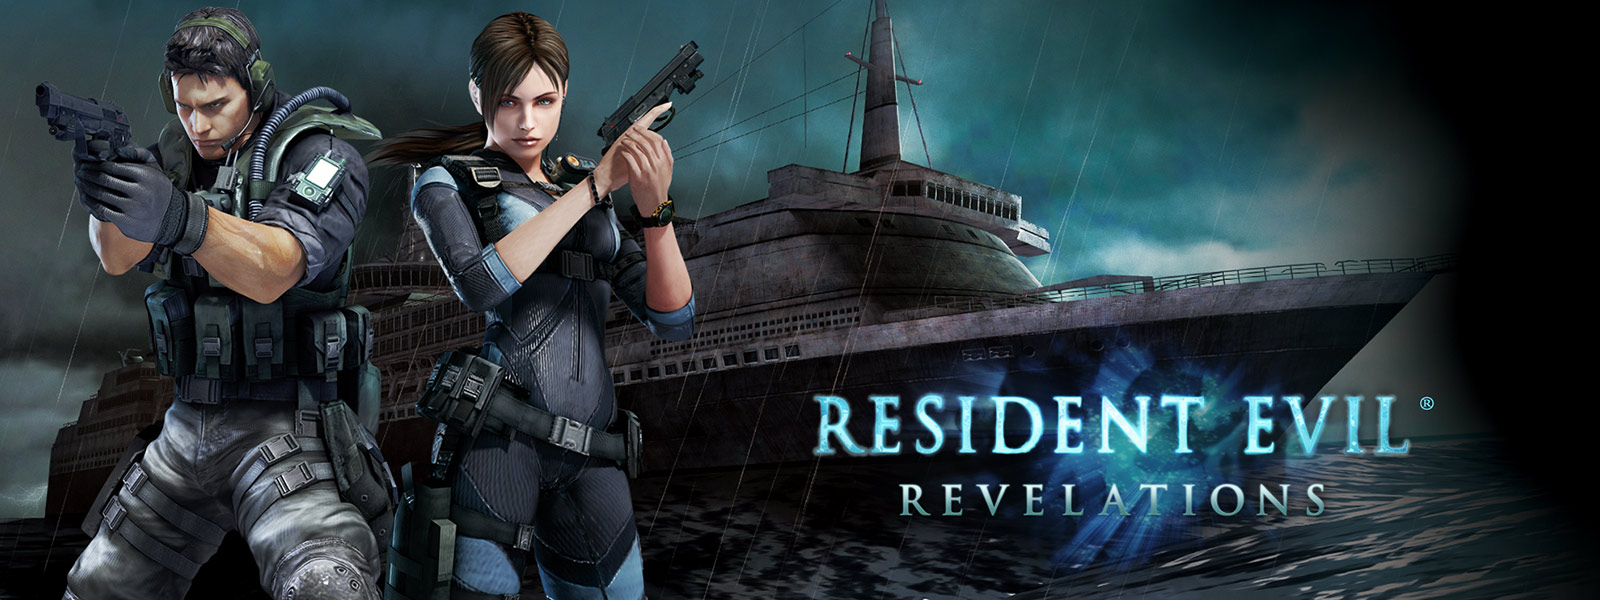 Resident Evil Revelations, dos personajes que sostienen pistolas delante de un crucero fantasmal